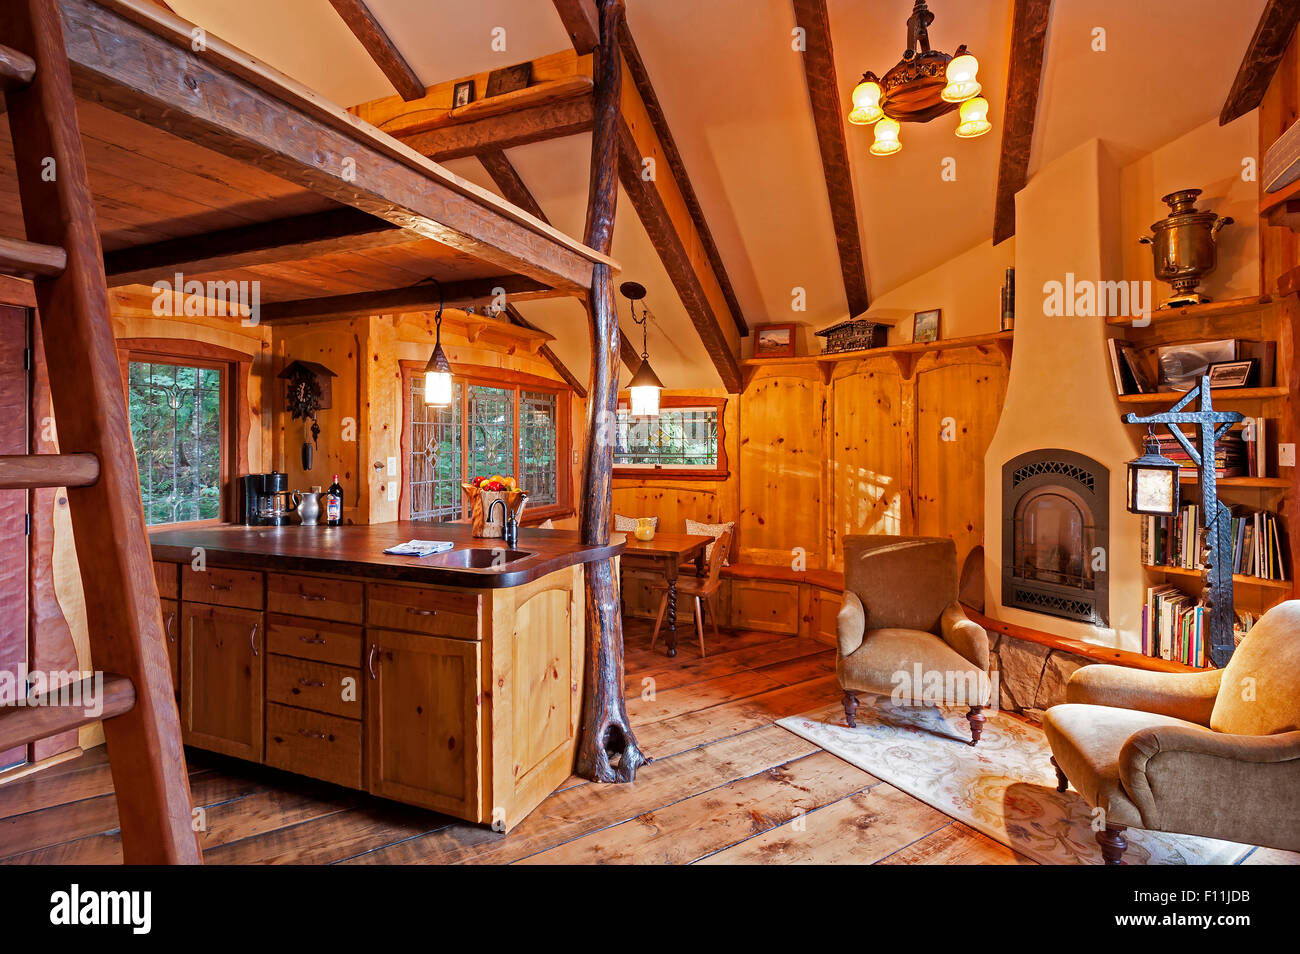 Küche und Loft in Baum-Holzhaus Stockfoto